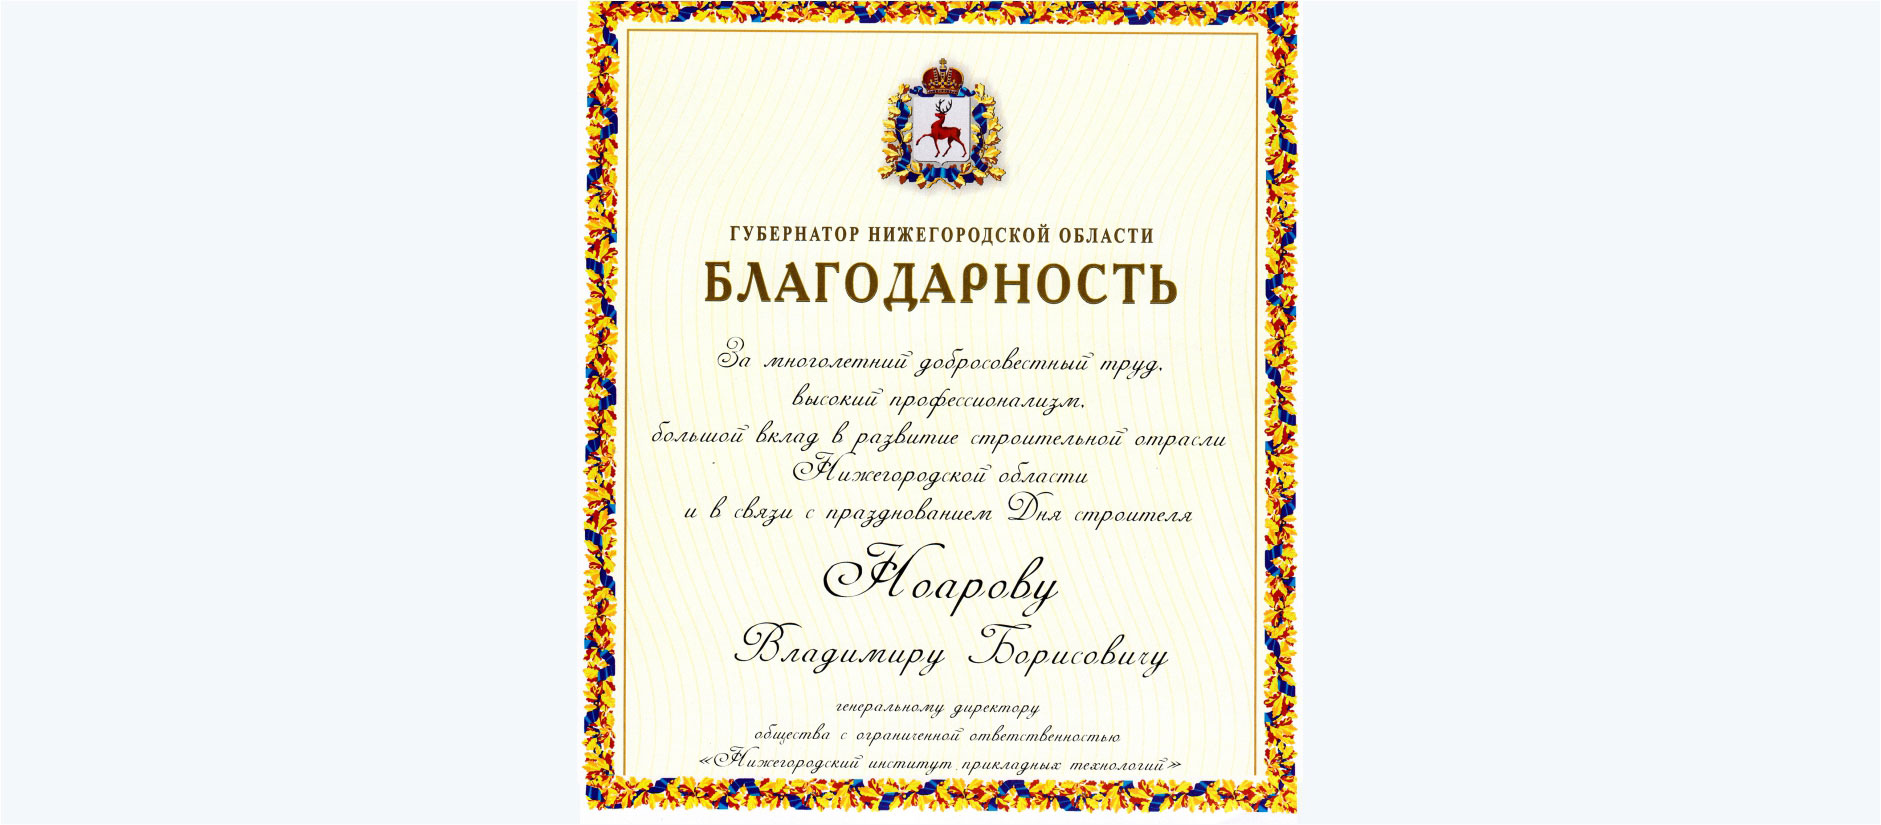 Генеральный директор ООО "НИПТ" получил благодарность от Губернатора Нижегородской области Глеба Никитина